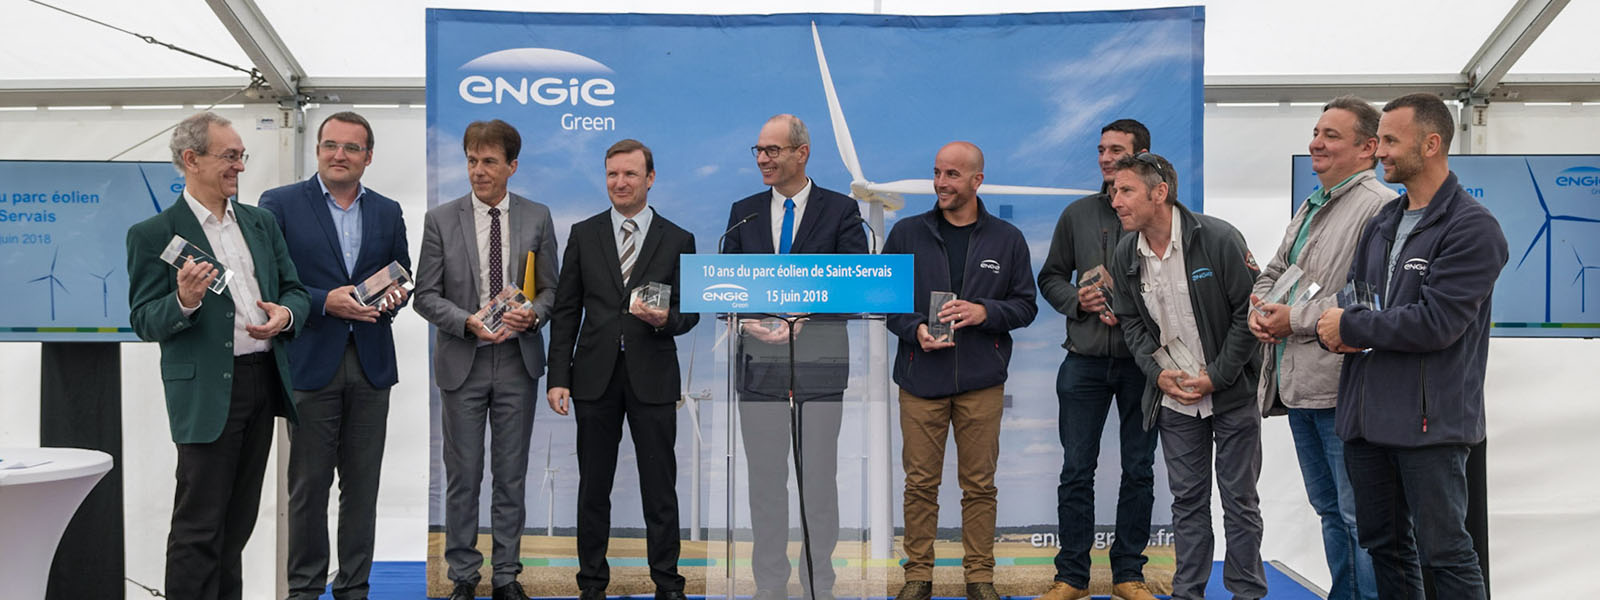 ENGIE Green célèbre le 10è anniversaire du parc éolien de Saint Servais en Côtes-d’Armor